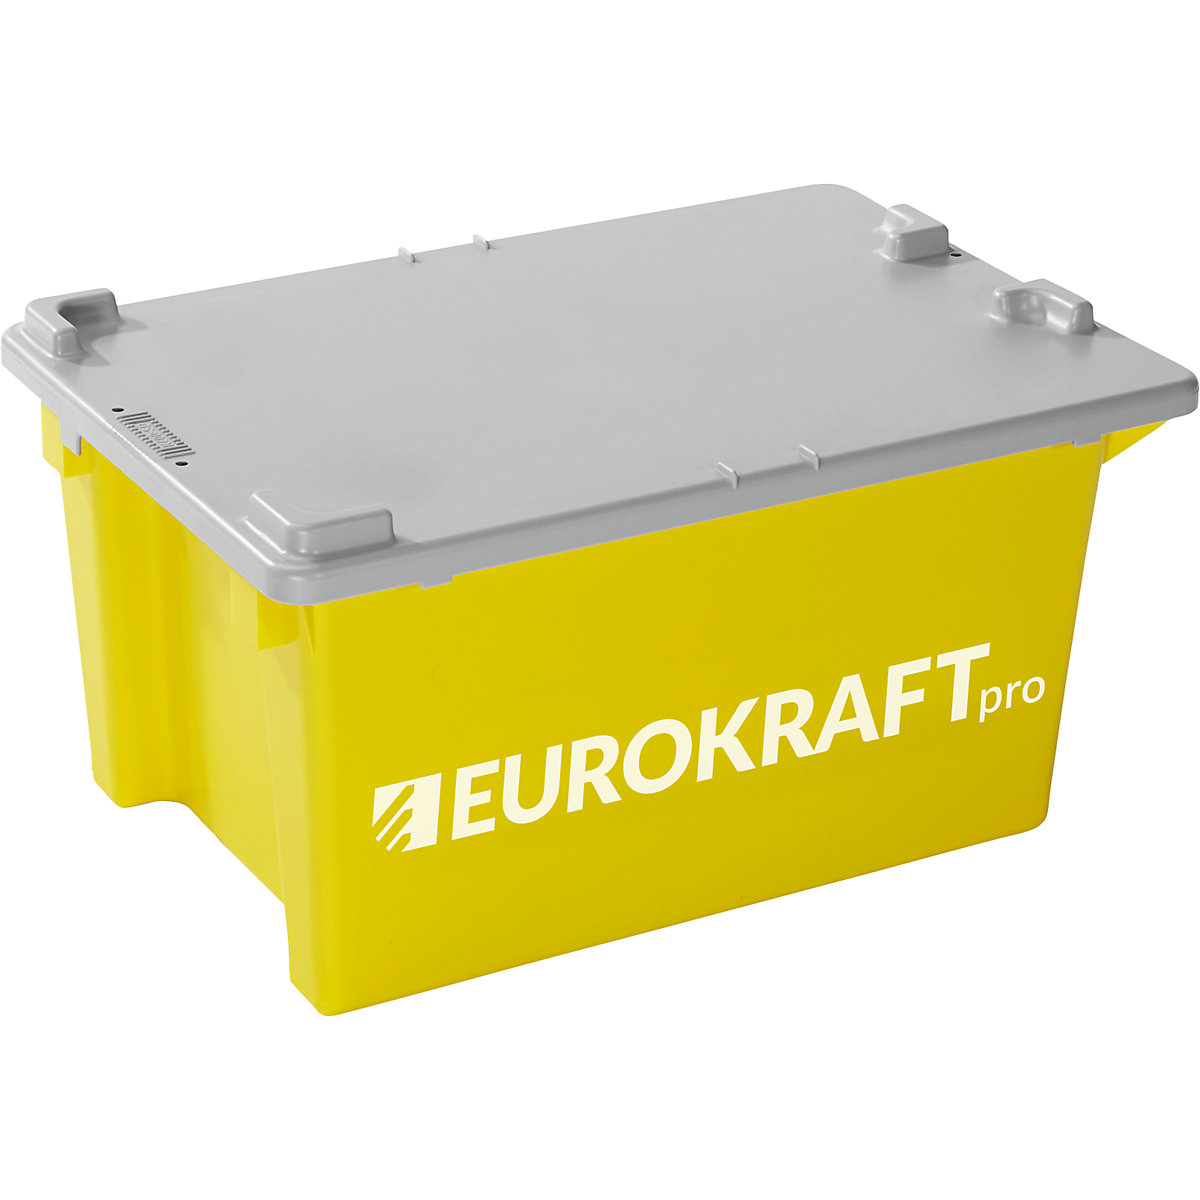 EUROKRAFTpro – Recipiente empilhável giratório (Imagem do produto 2)